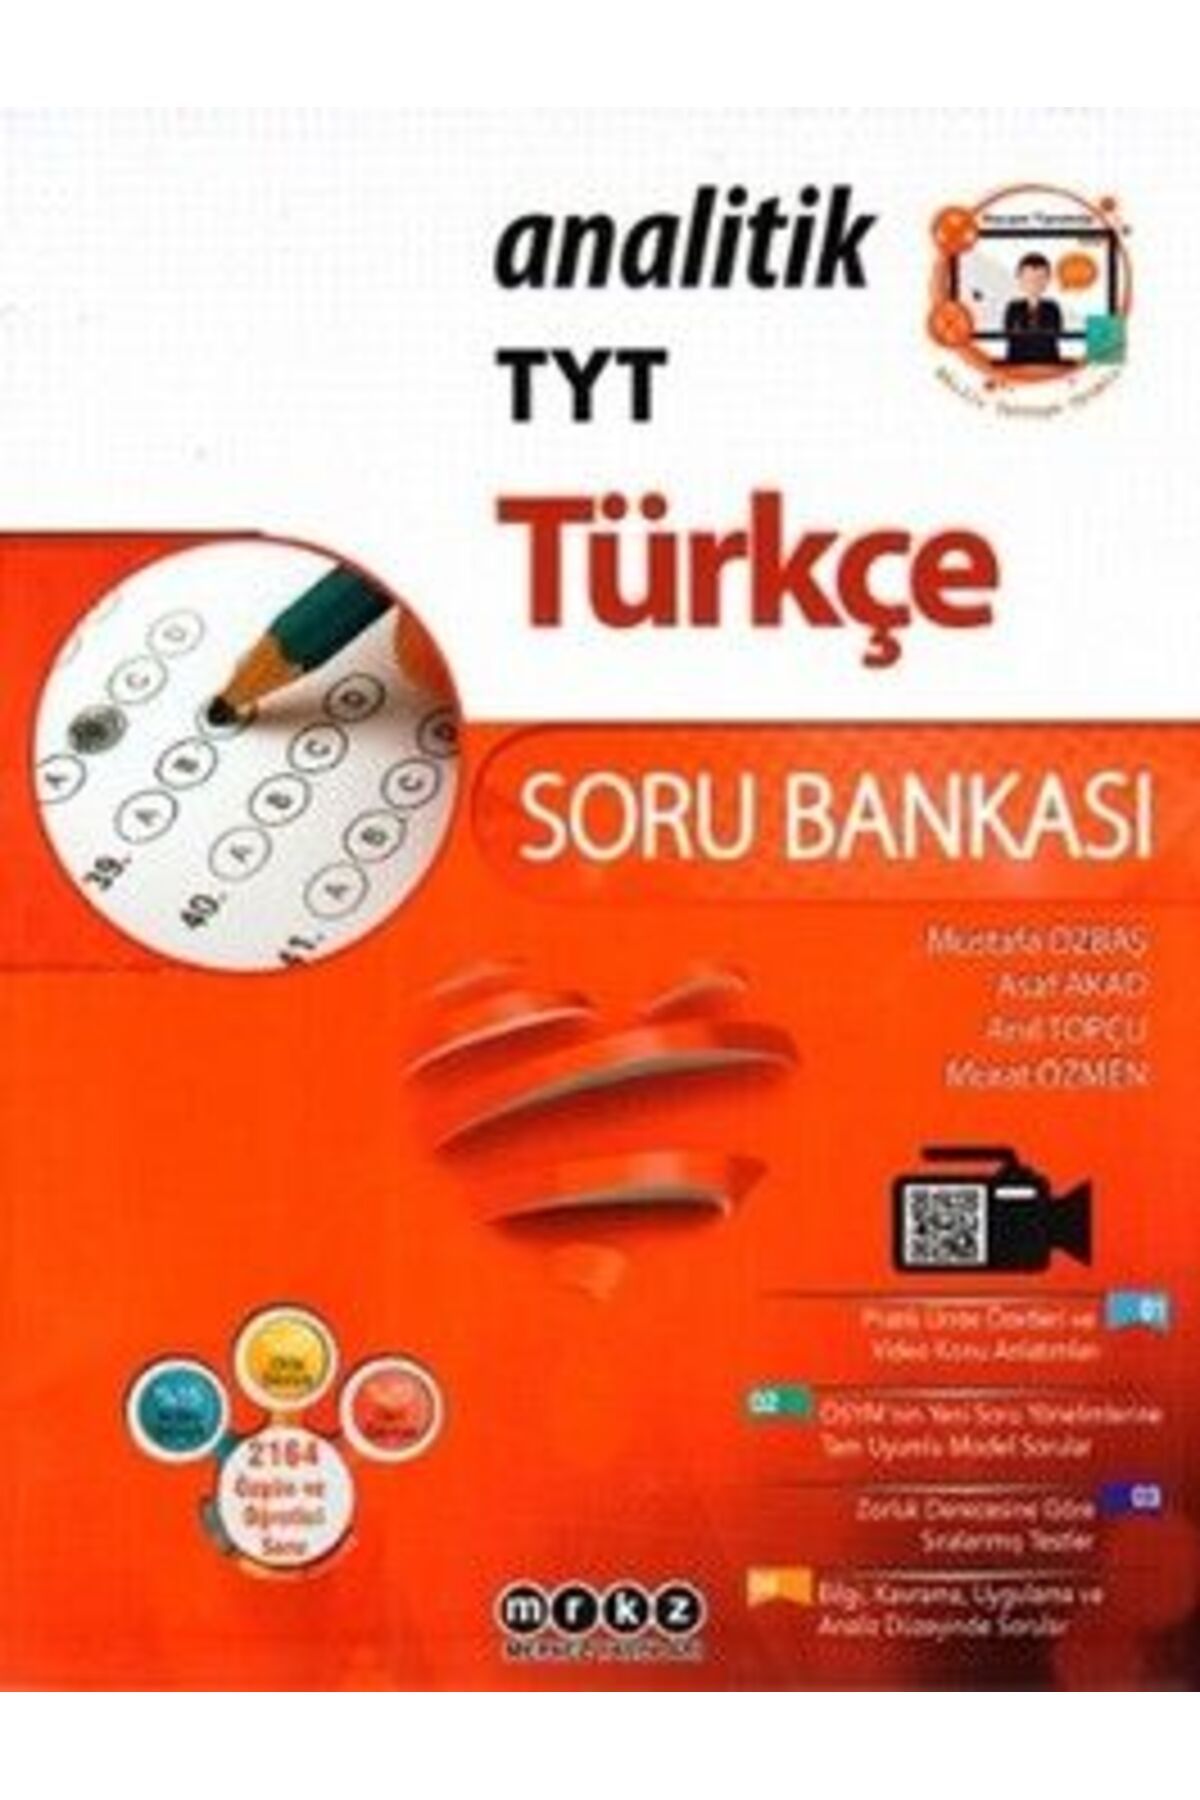 Merkez Yayınları Tyt Türkçe Analitik Soru Bankası 729989